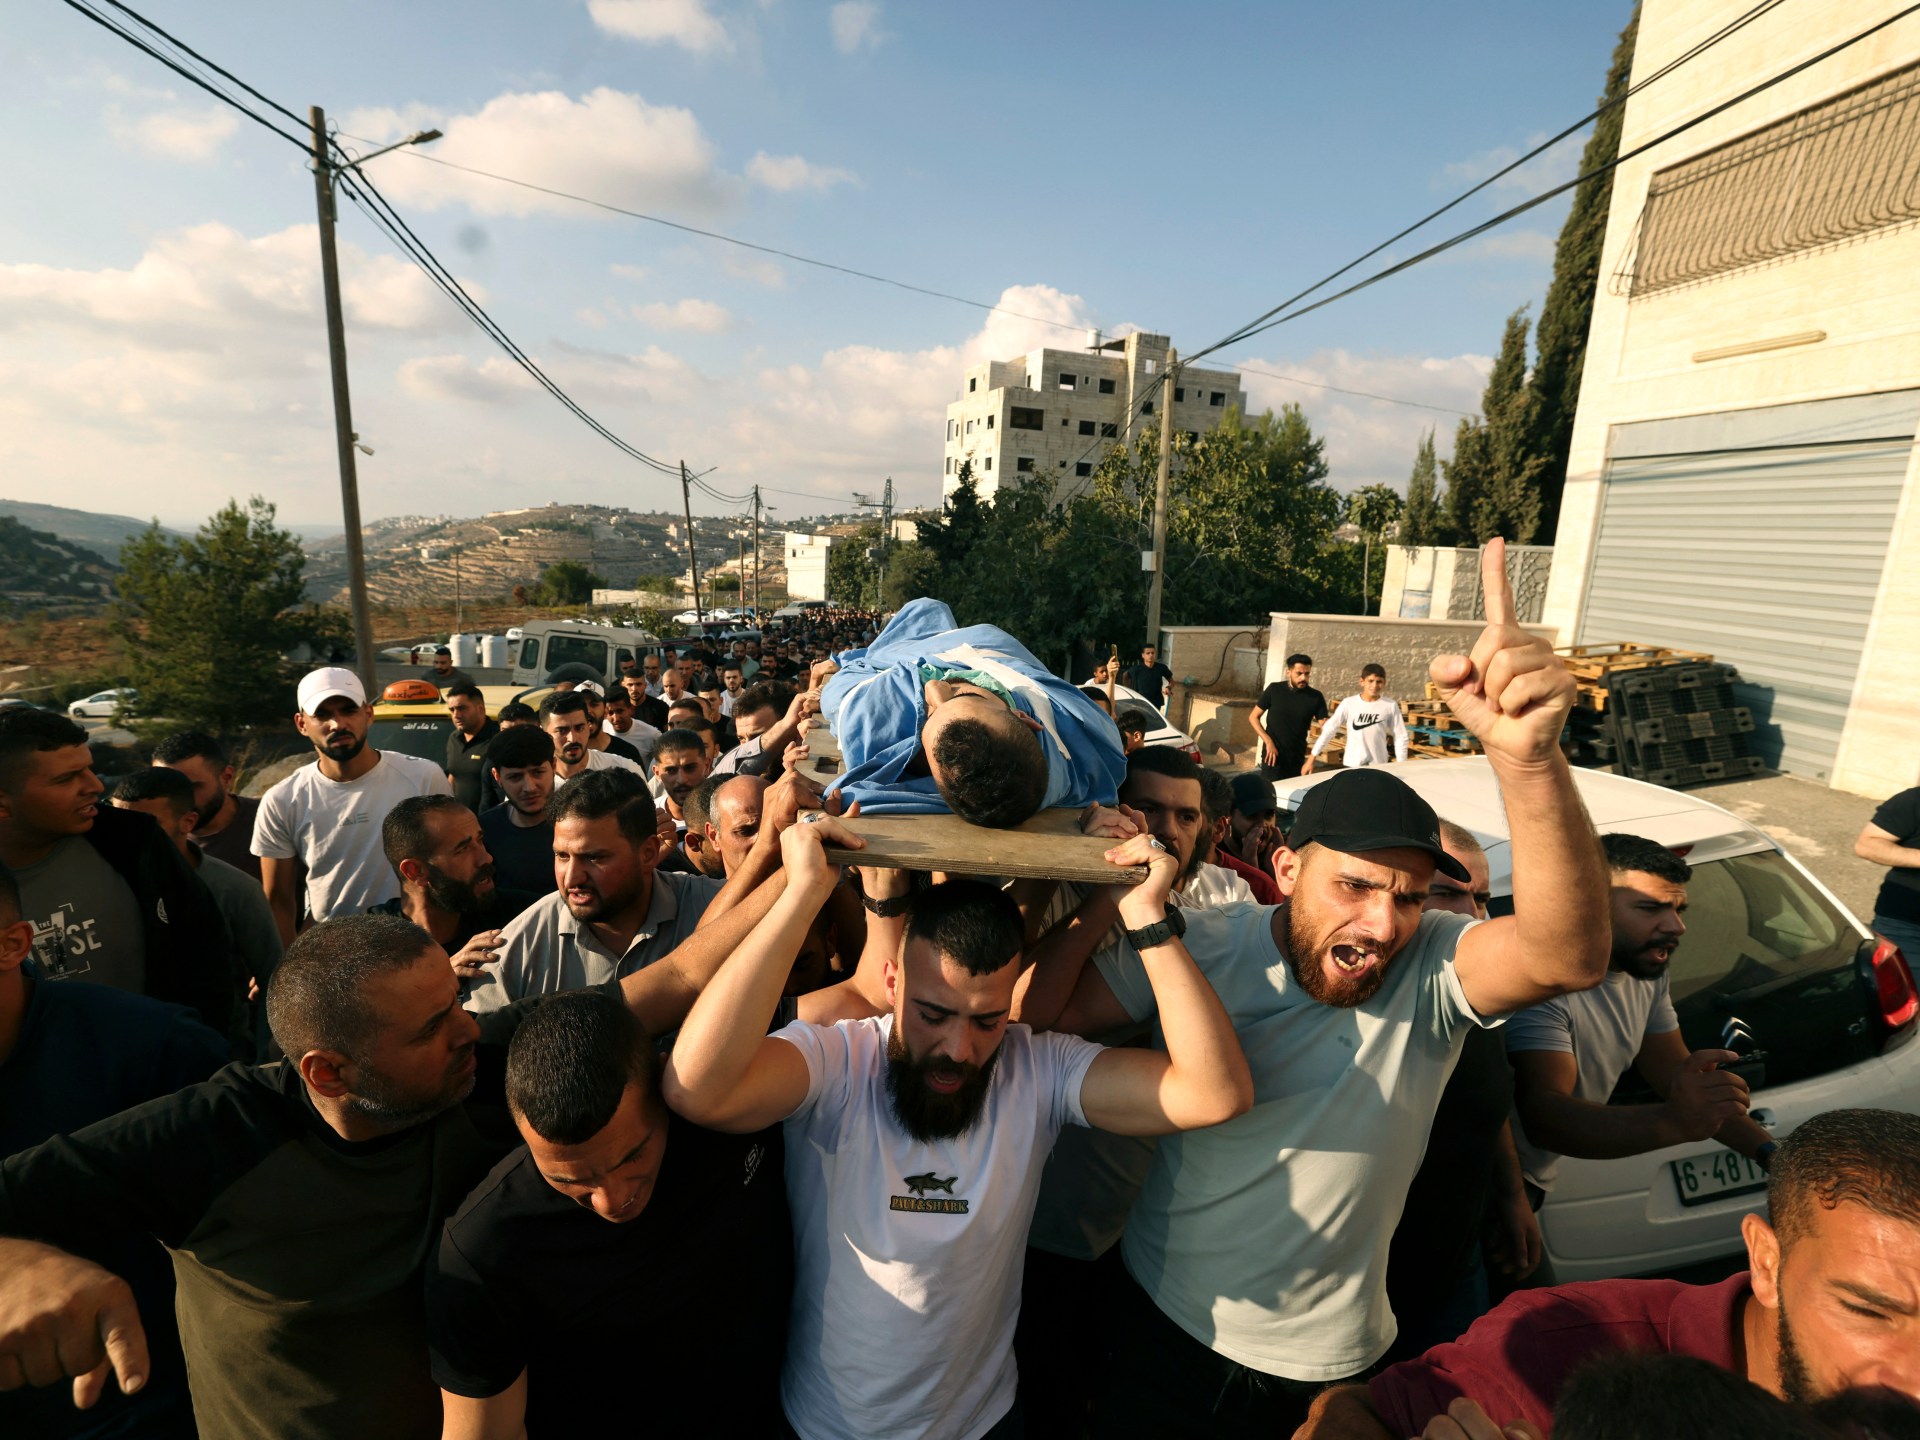 16 شهيدا ومئات المصابين برصاص الاحتلال في الضفة | أخبار – البوكس نيوز